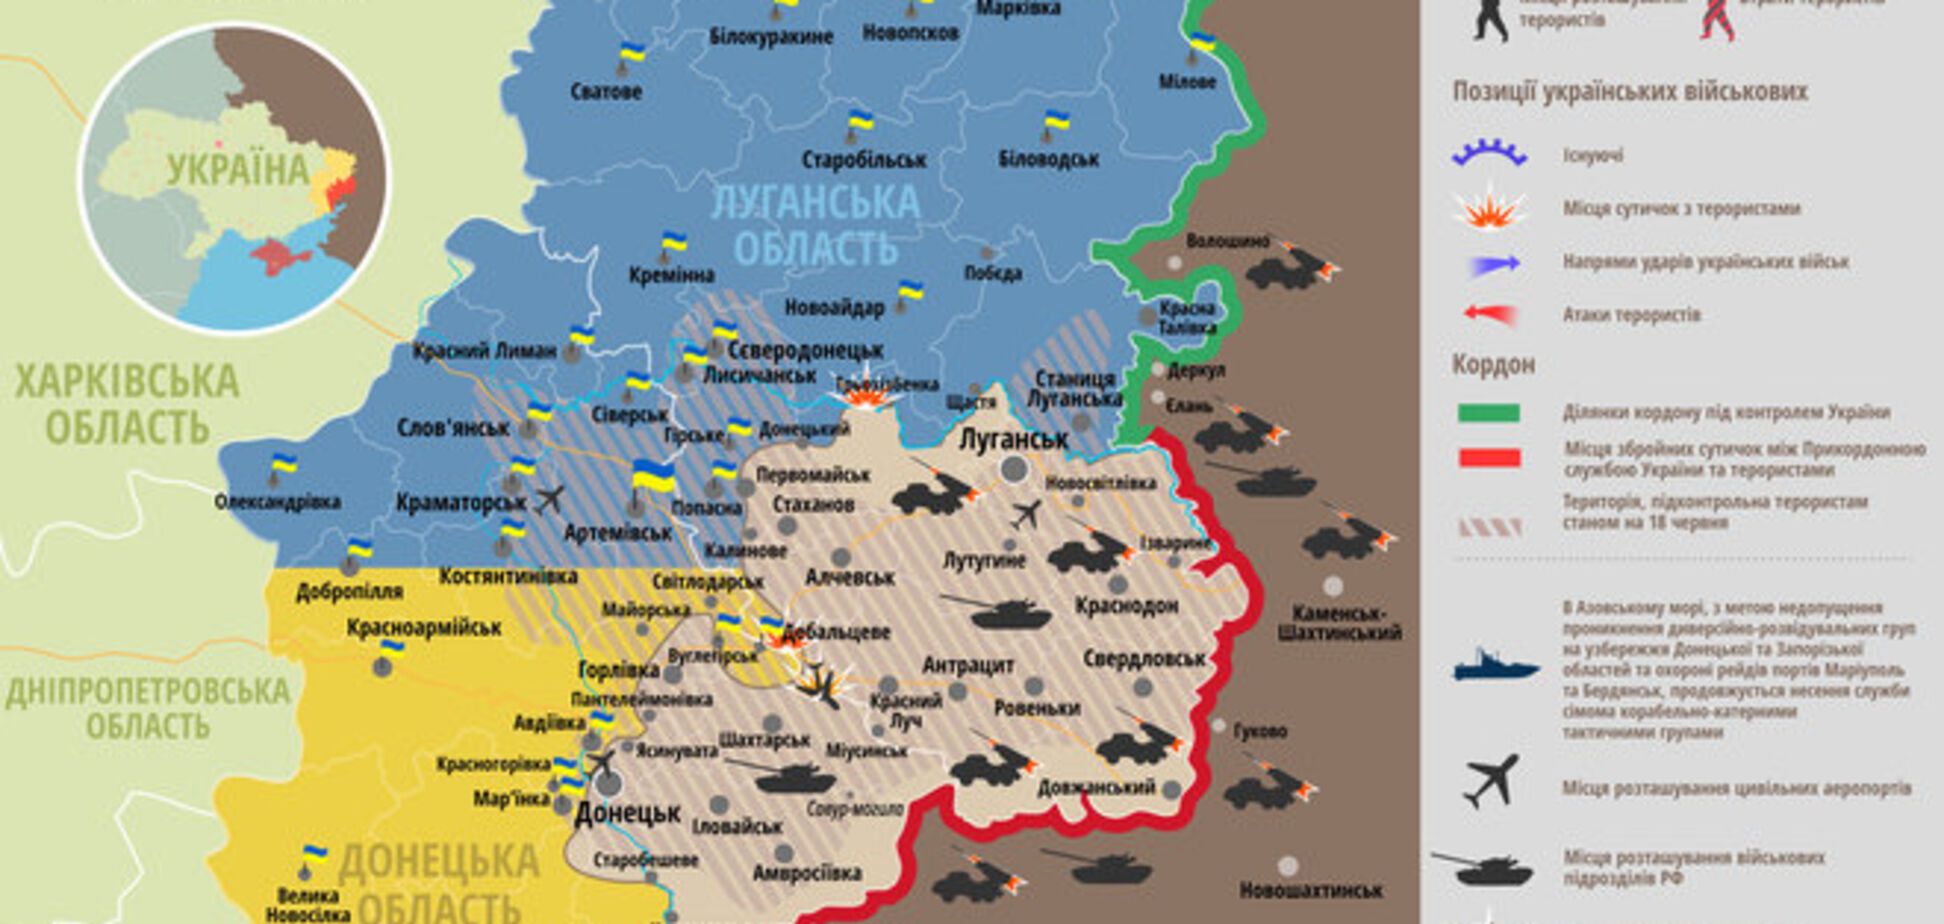 За сутки 'перемирия' ранены 3 украинских военных: карта АТО